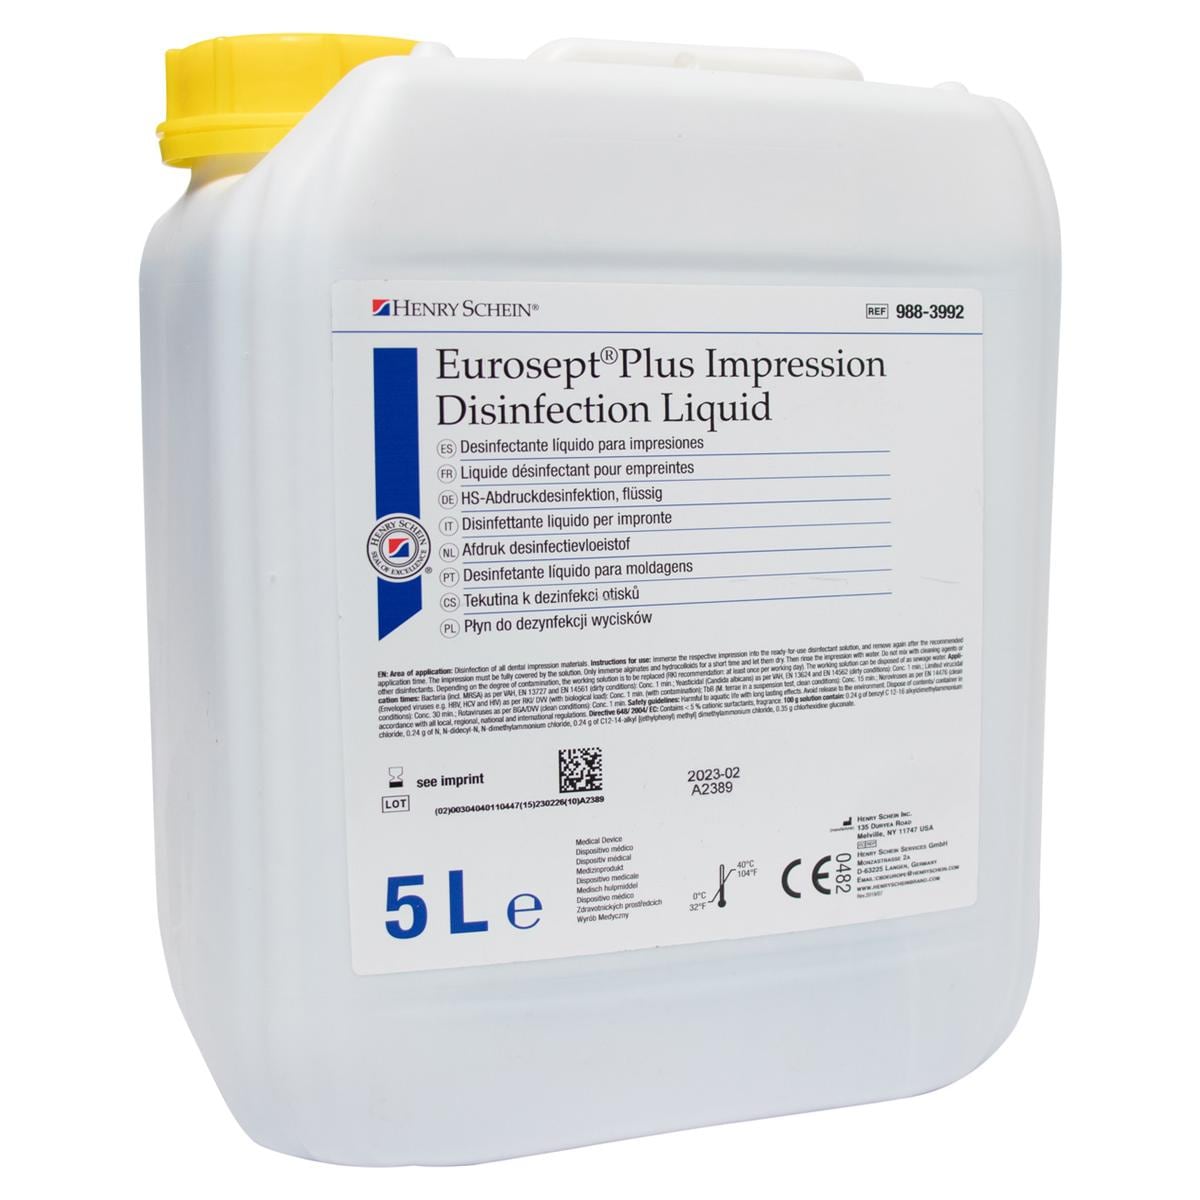 EuroSept Plus Impression Disinfection Liquid - 5 liter